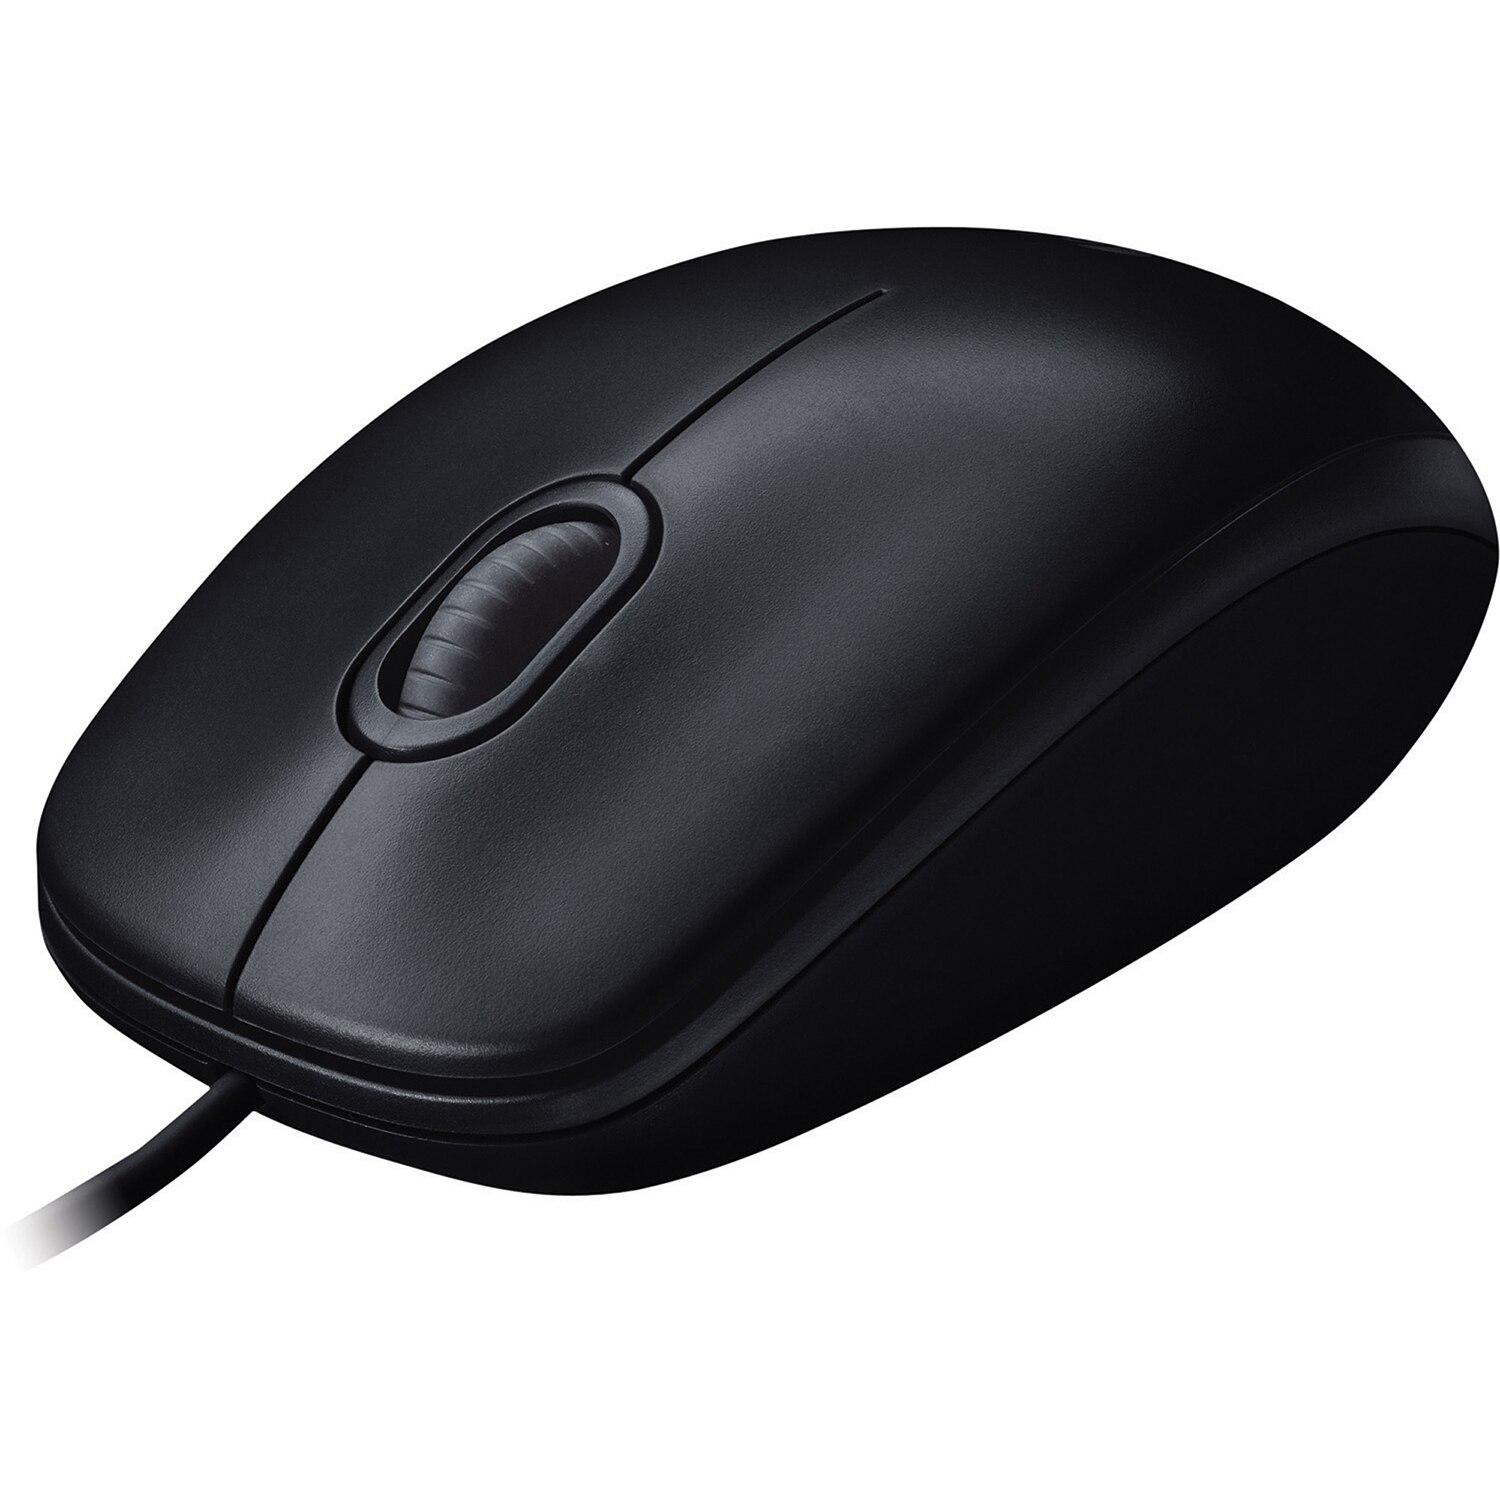 Logitech M100 USB Mouse-Black